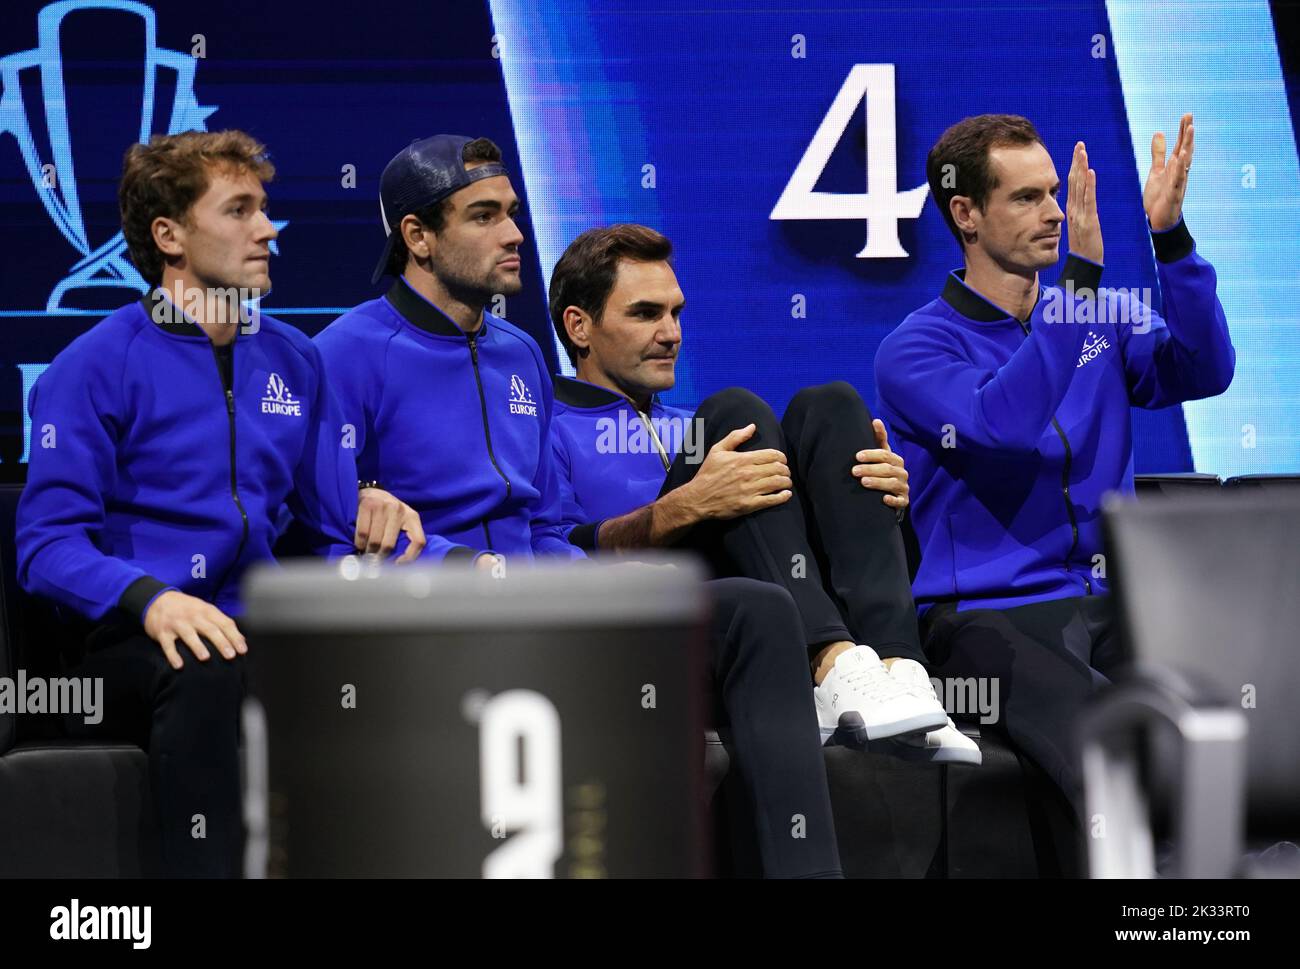 Casper Rudd, Matteo Berrettini, Roger Federer y Andy Murray, del equipo de Europa, observando a Cameron Norrie vs. Taylor Fritz en el segundo día de la Copa Laver en el O2 Arena, Londres. Fecha de la foto: Sábado 24 de septiembre de 2022. Foto de stock